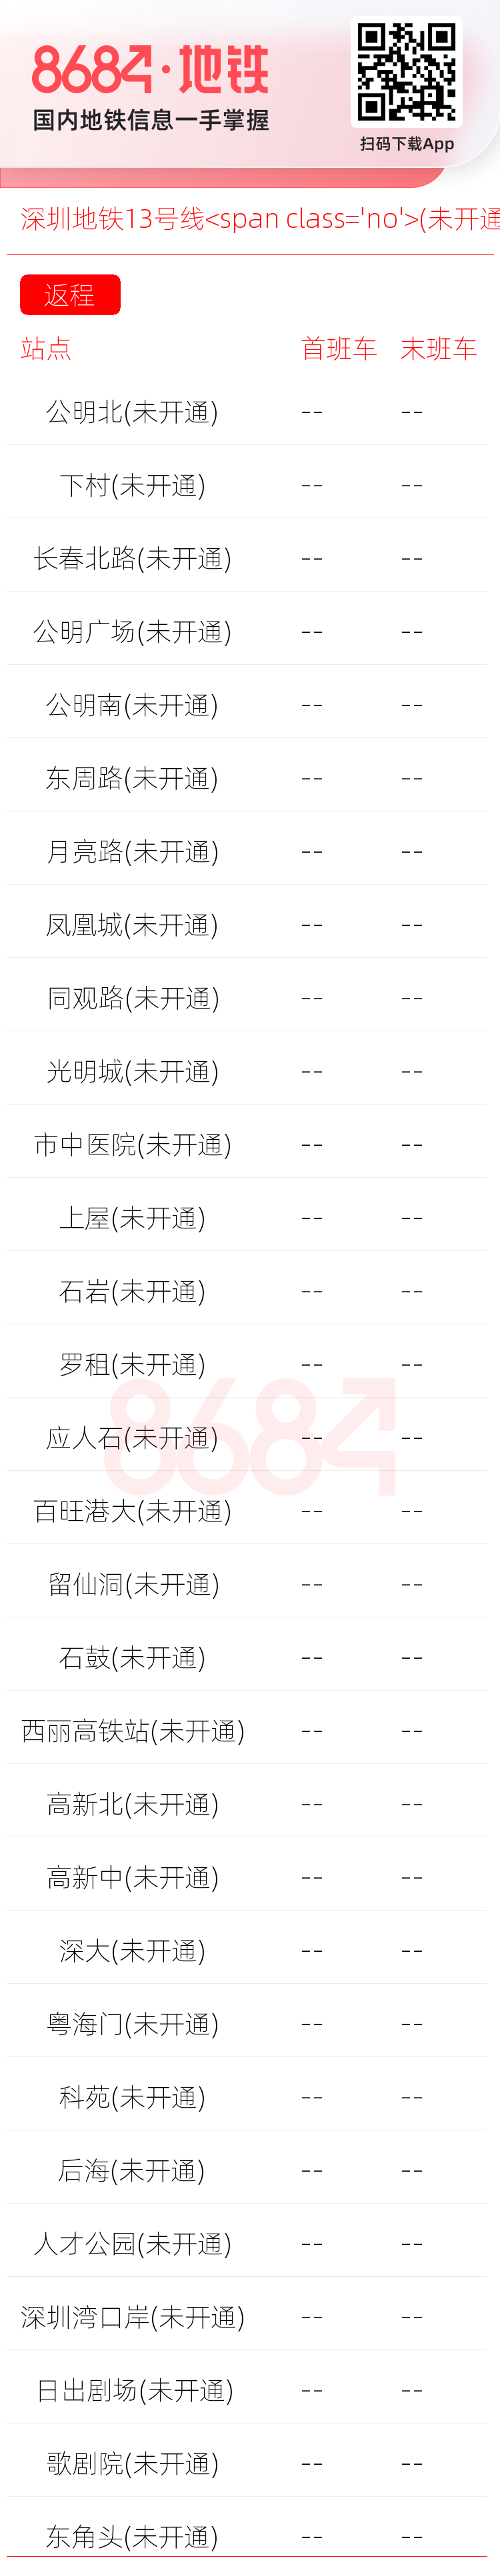 深圳地铁13号线<span class='no'>(未开通)</span>运营时间表